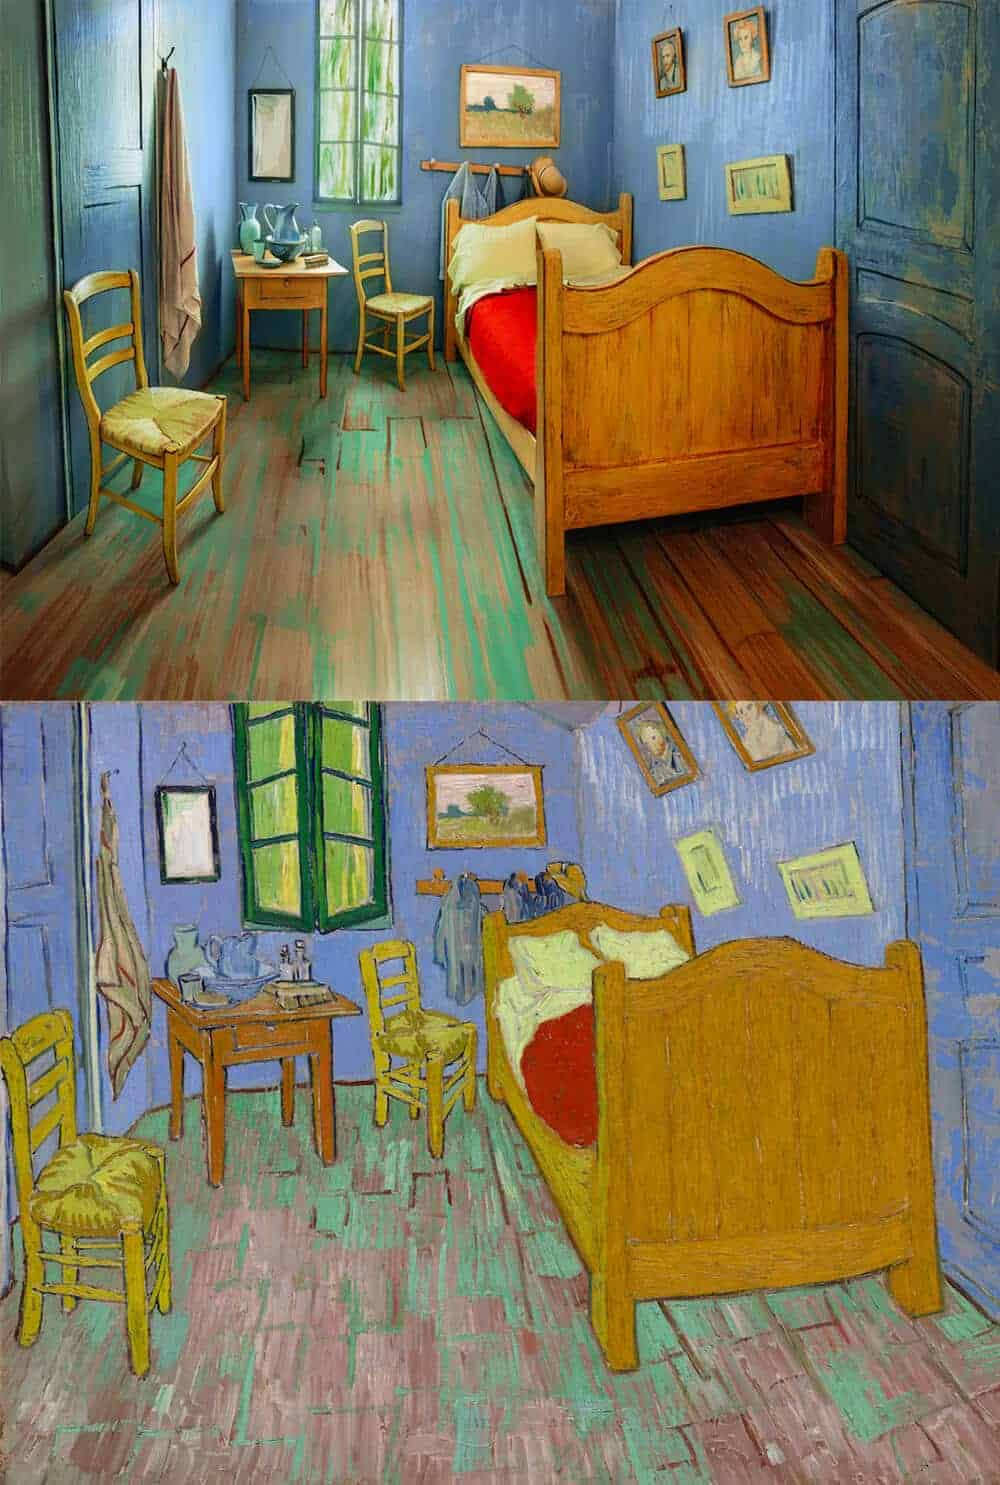 de slaapkamer van Vincent van Gogh